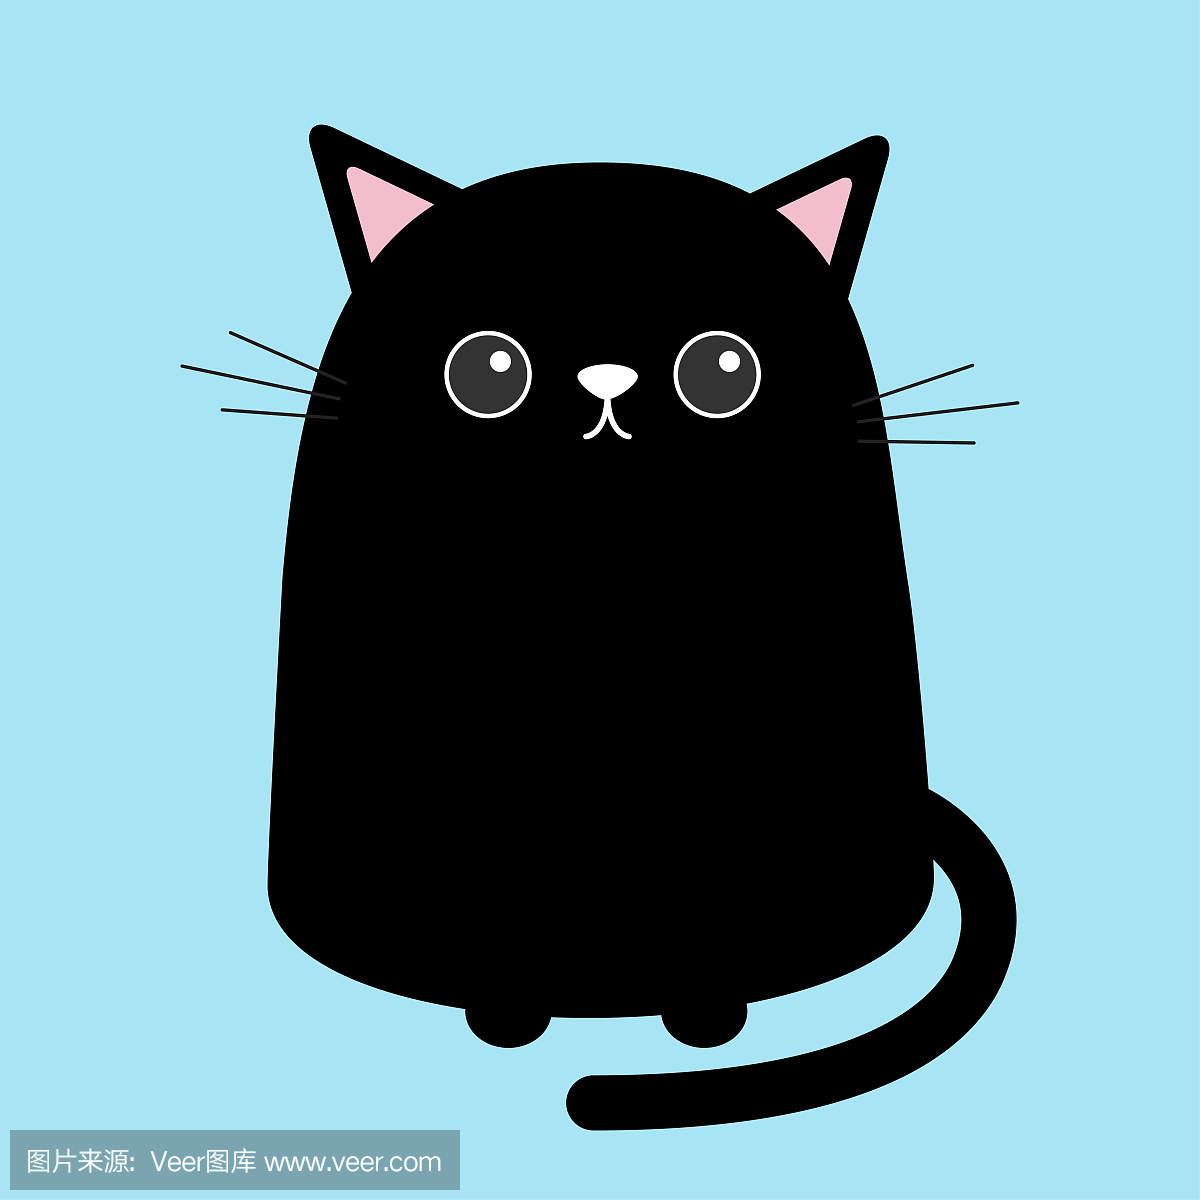 万圣节黑猫背景 免费图片 - Public Domain Pictures